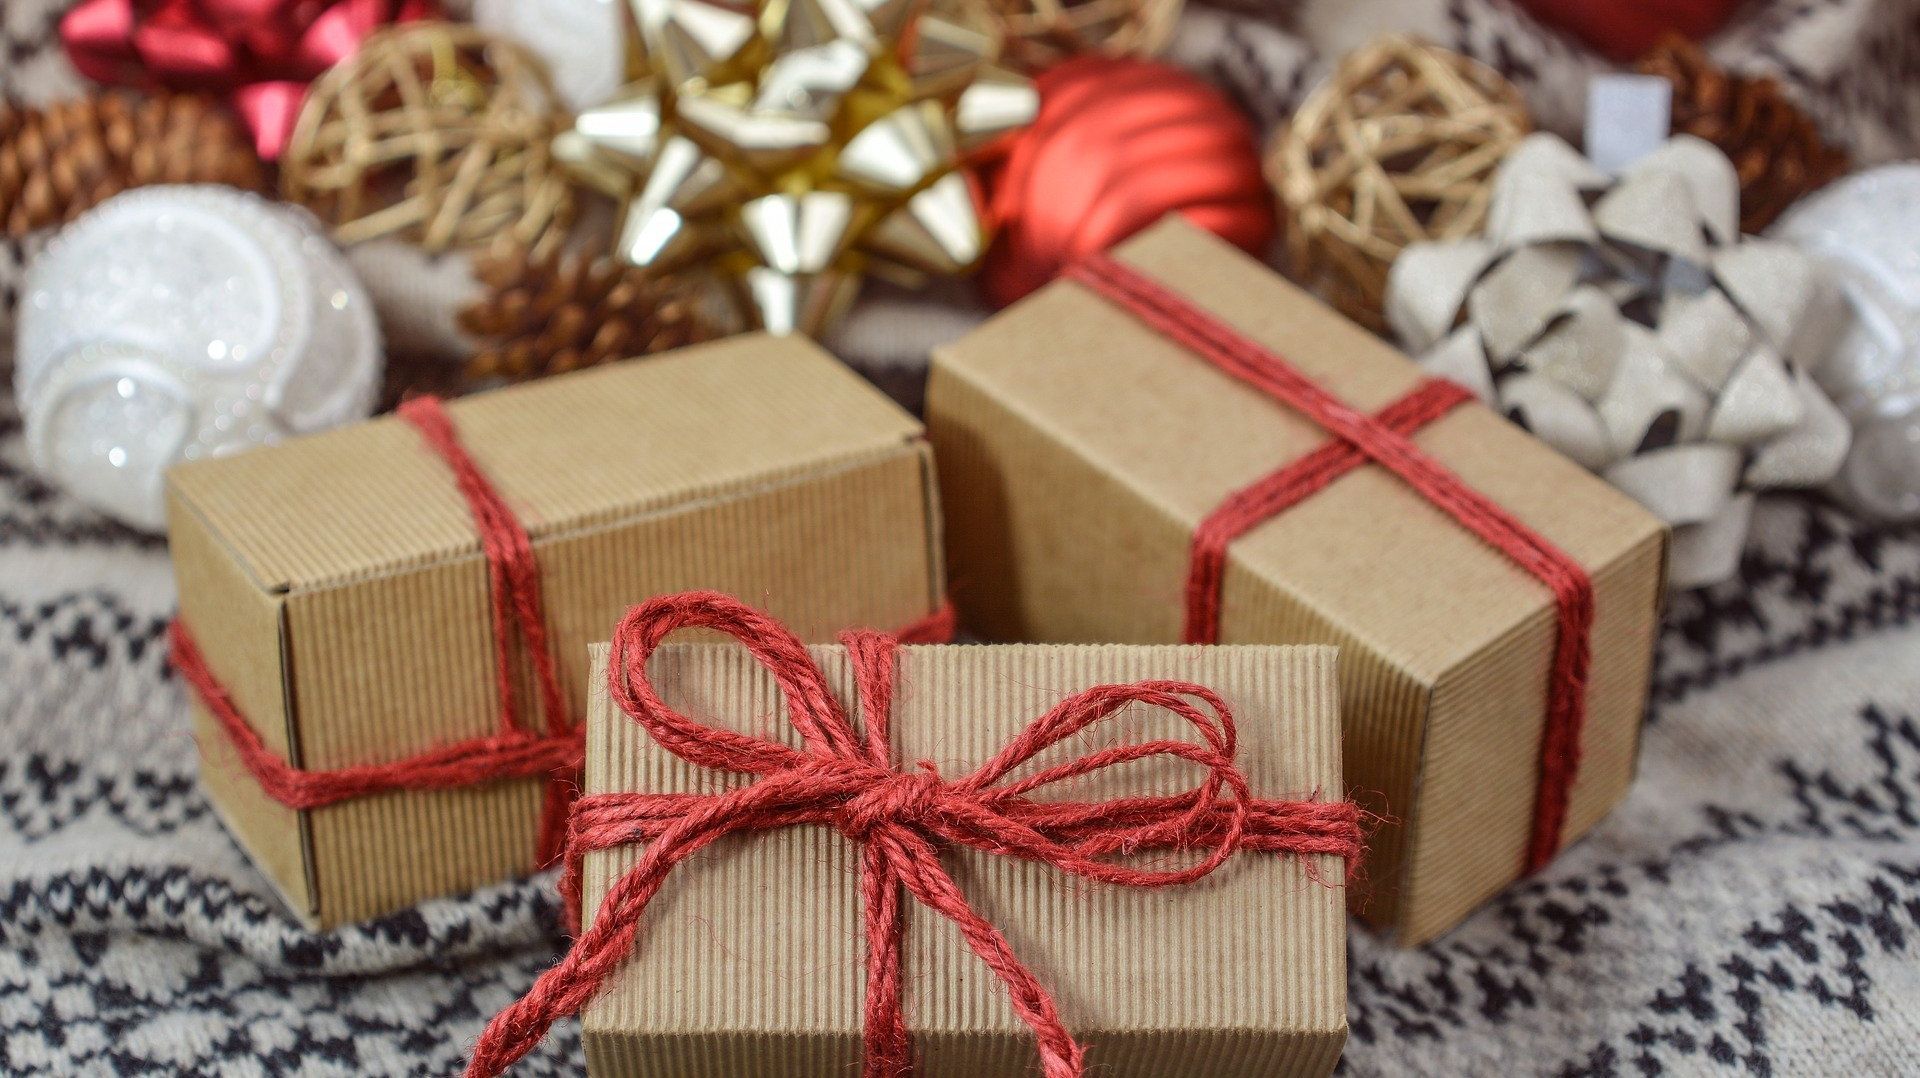 Des cadeaux durables pour Noël : il y a de la magie à offrir autrement !